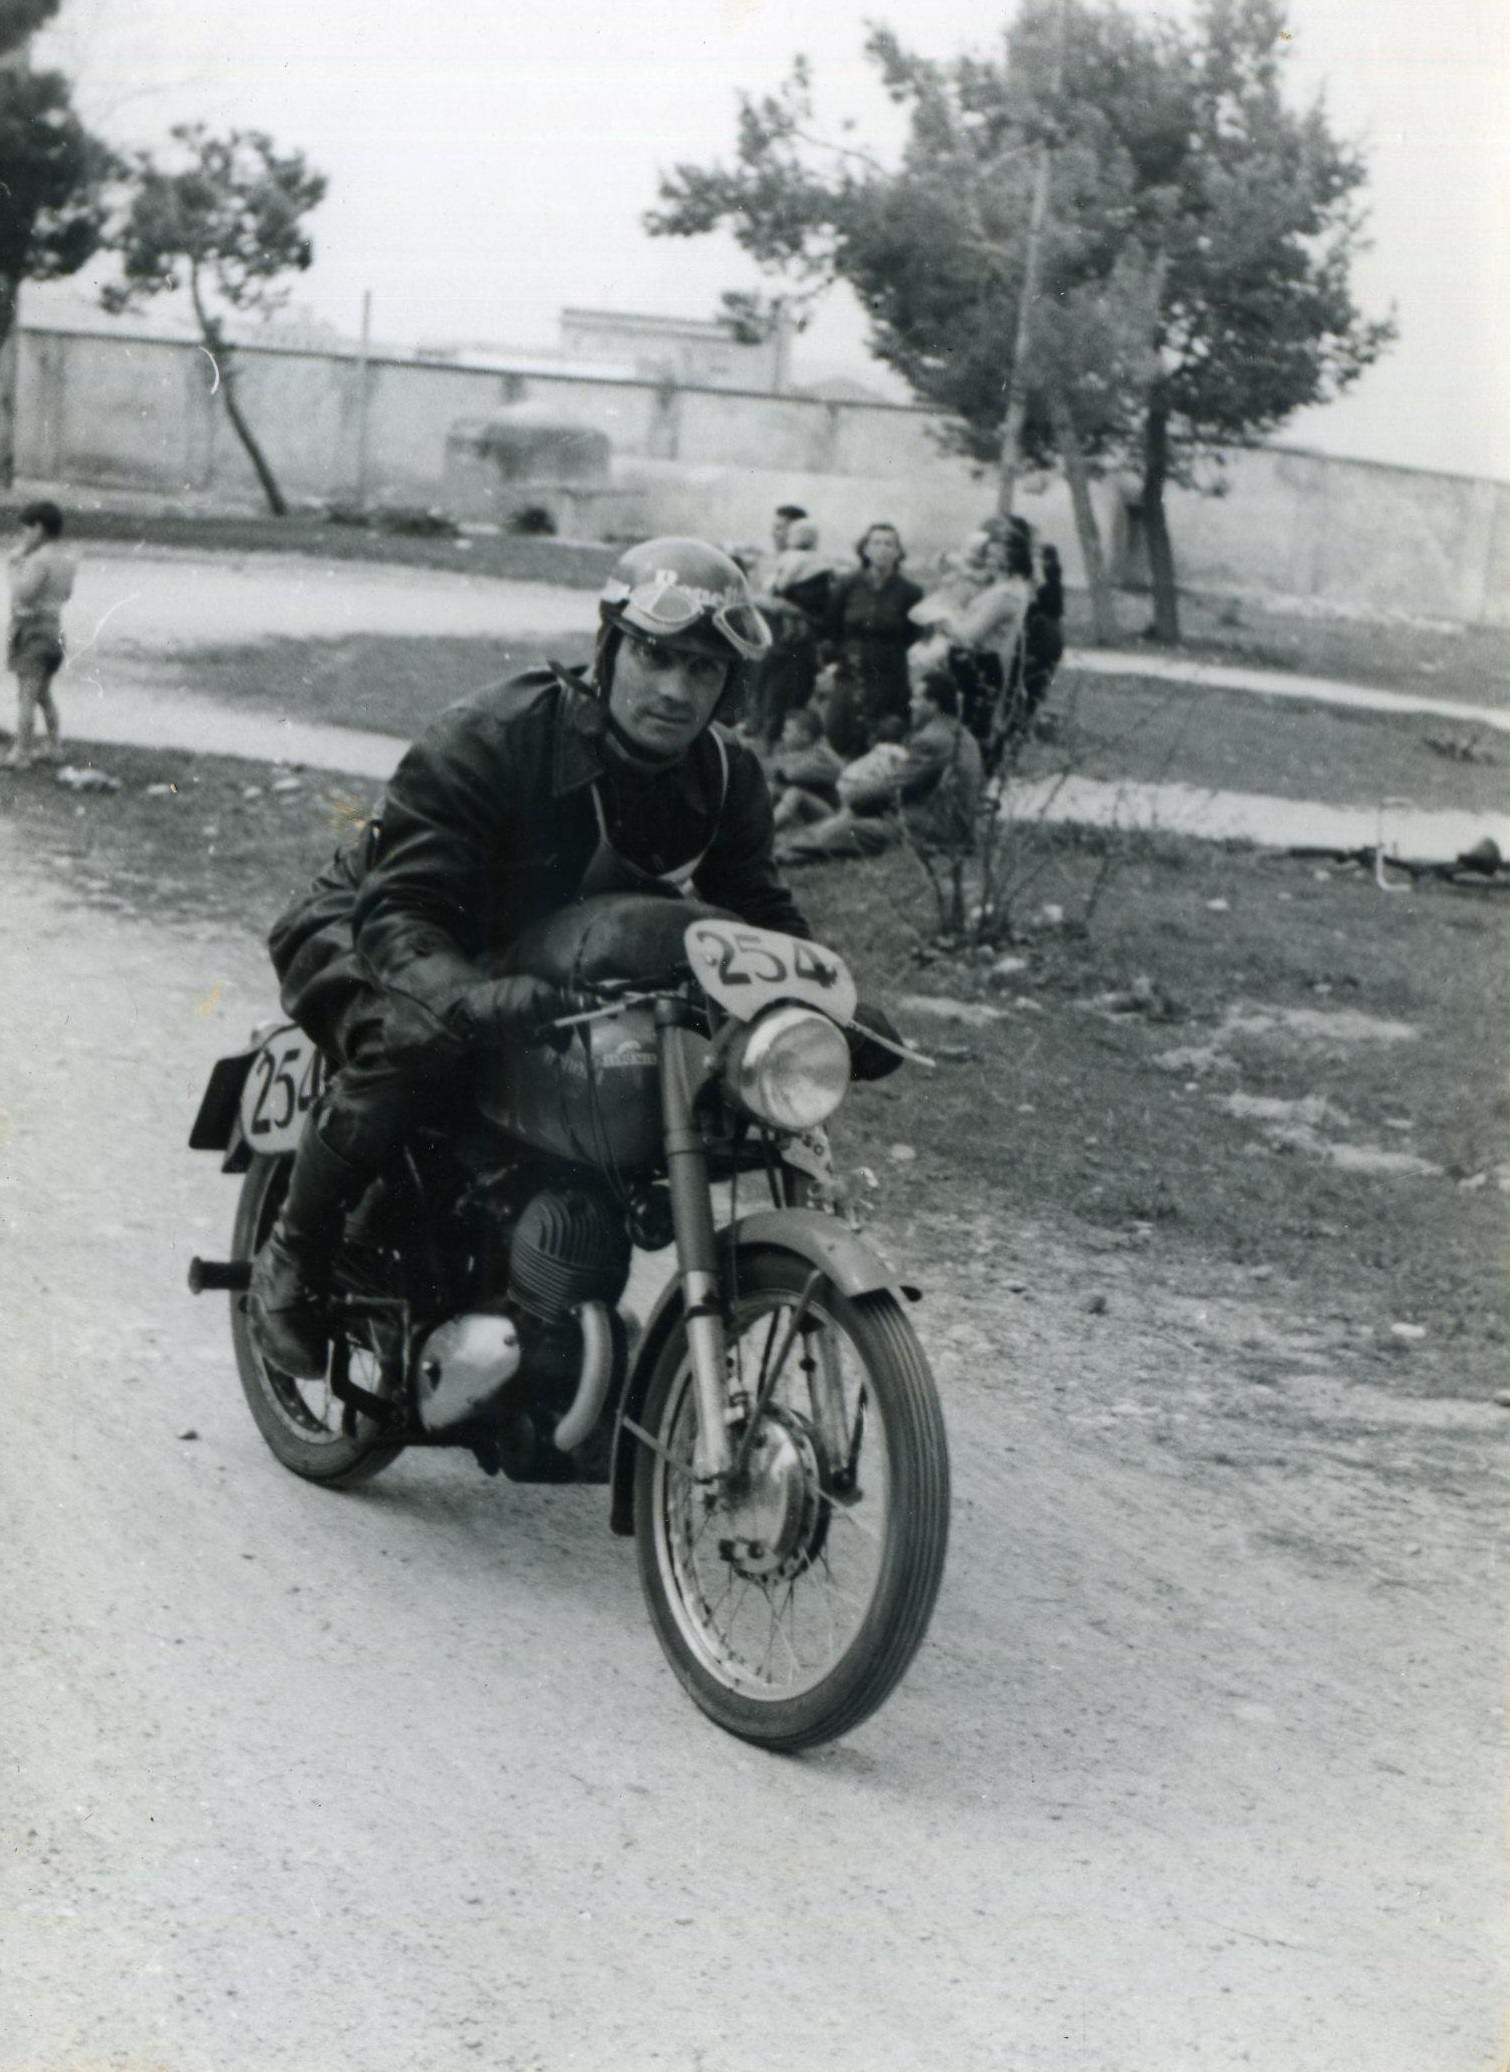 1954 Bologna II° Motogiro d’Italia Pietrogrande in azione